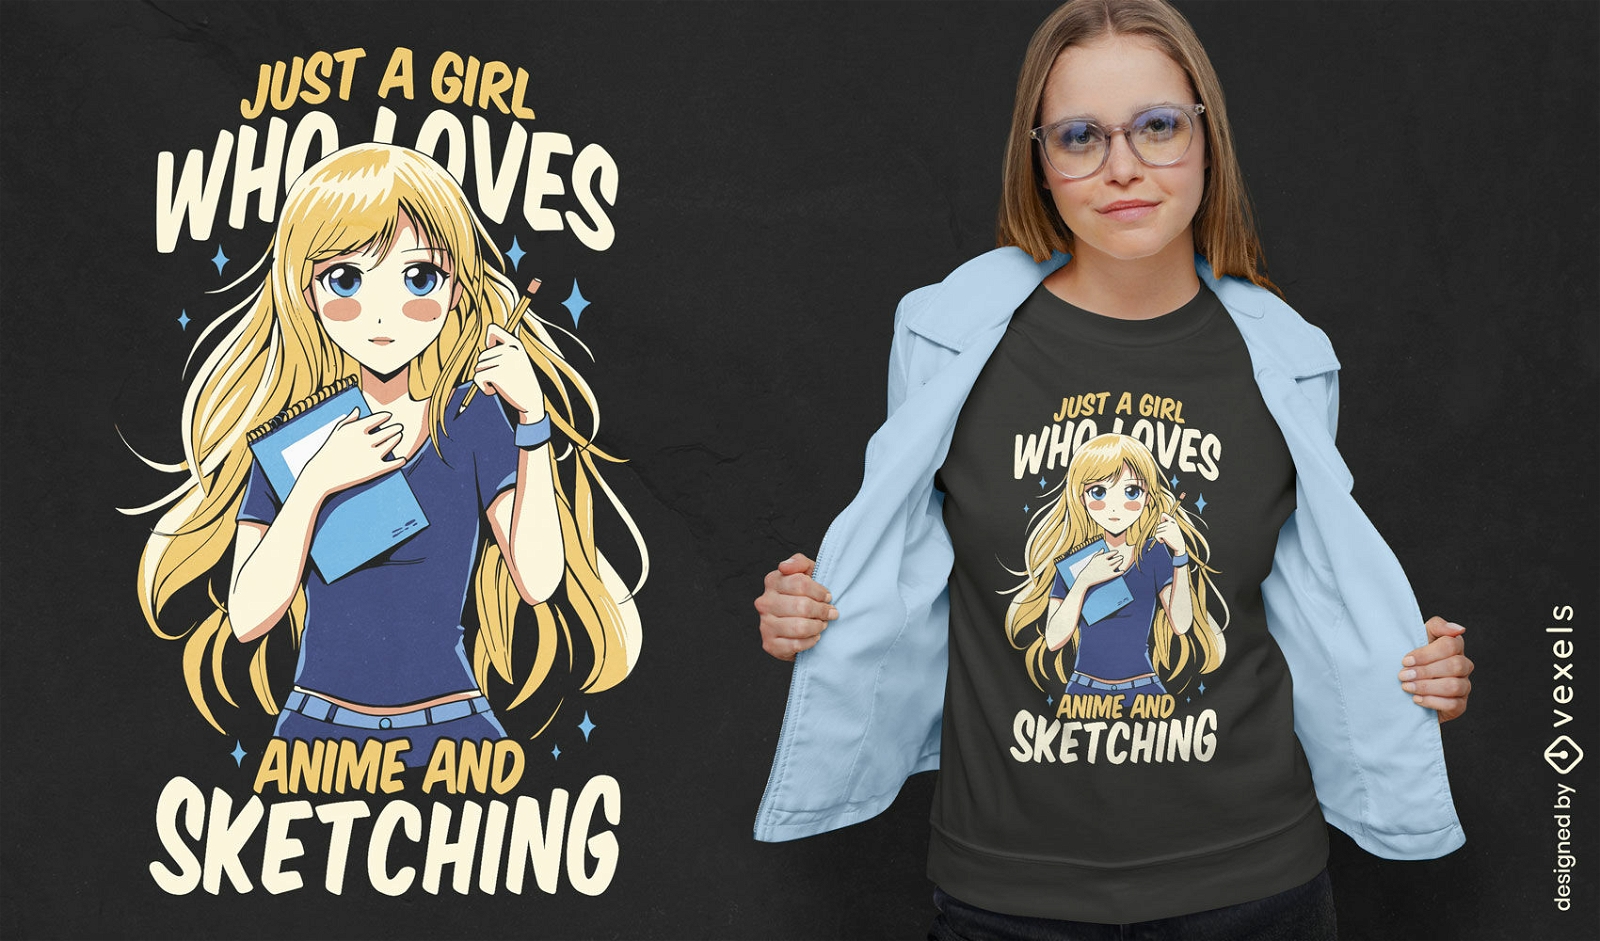 Hermoso diseño de camiseta de chica anime